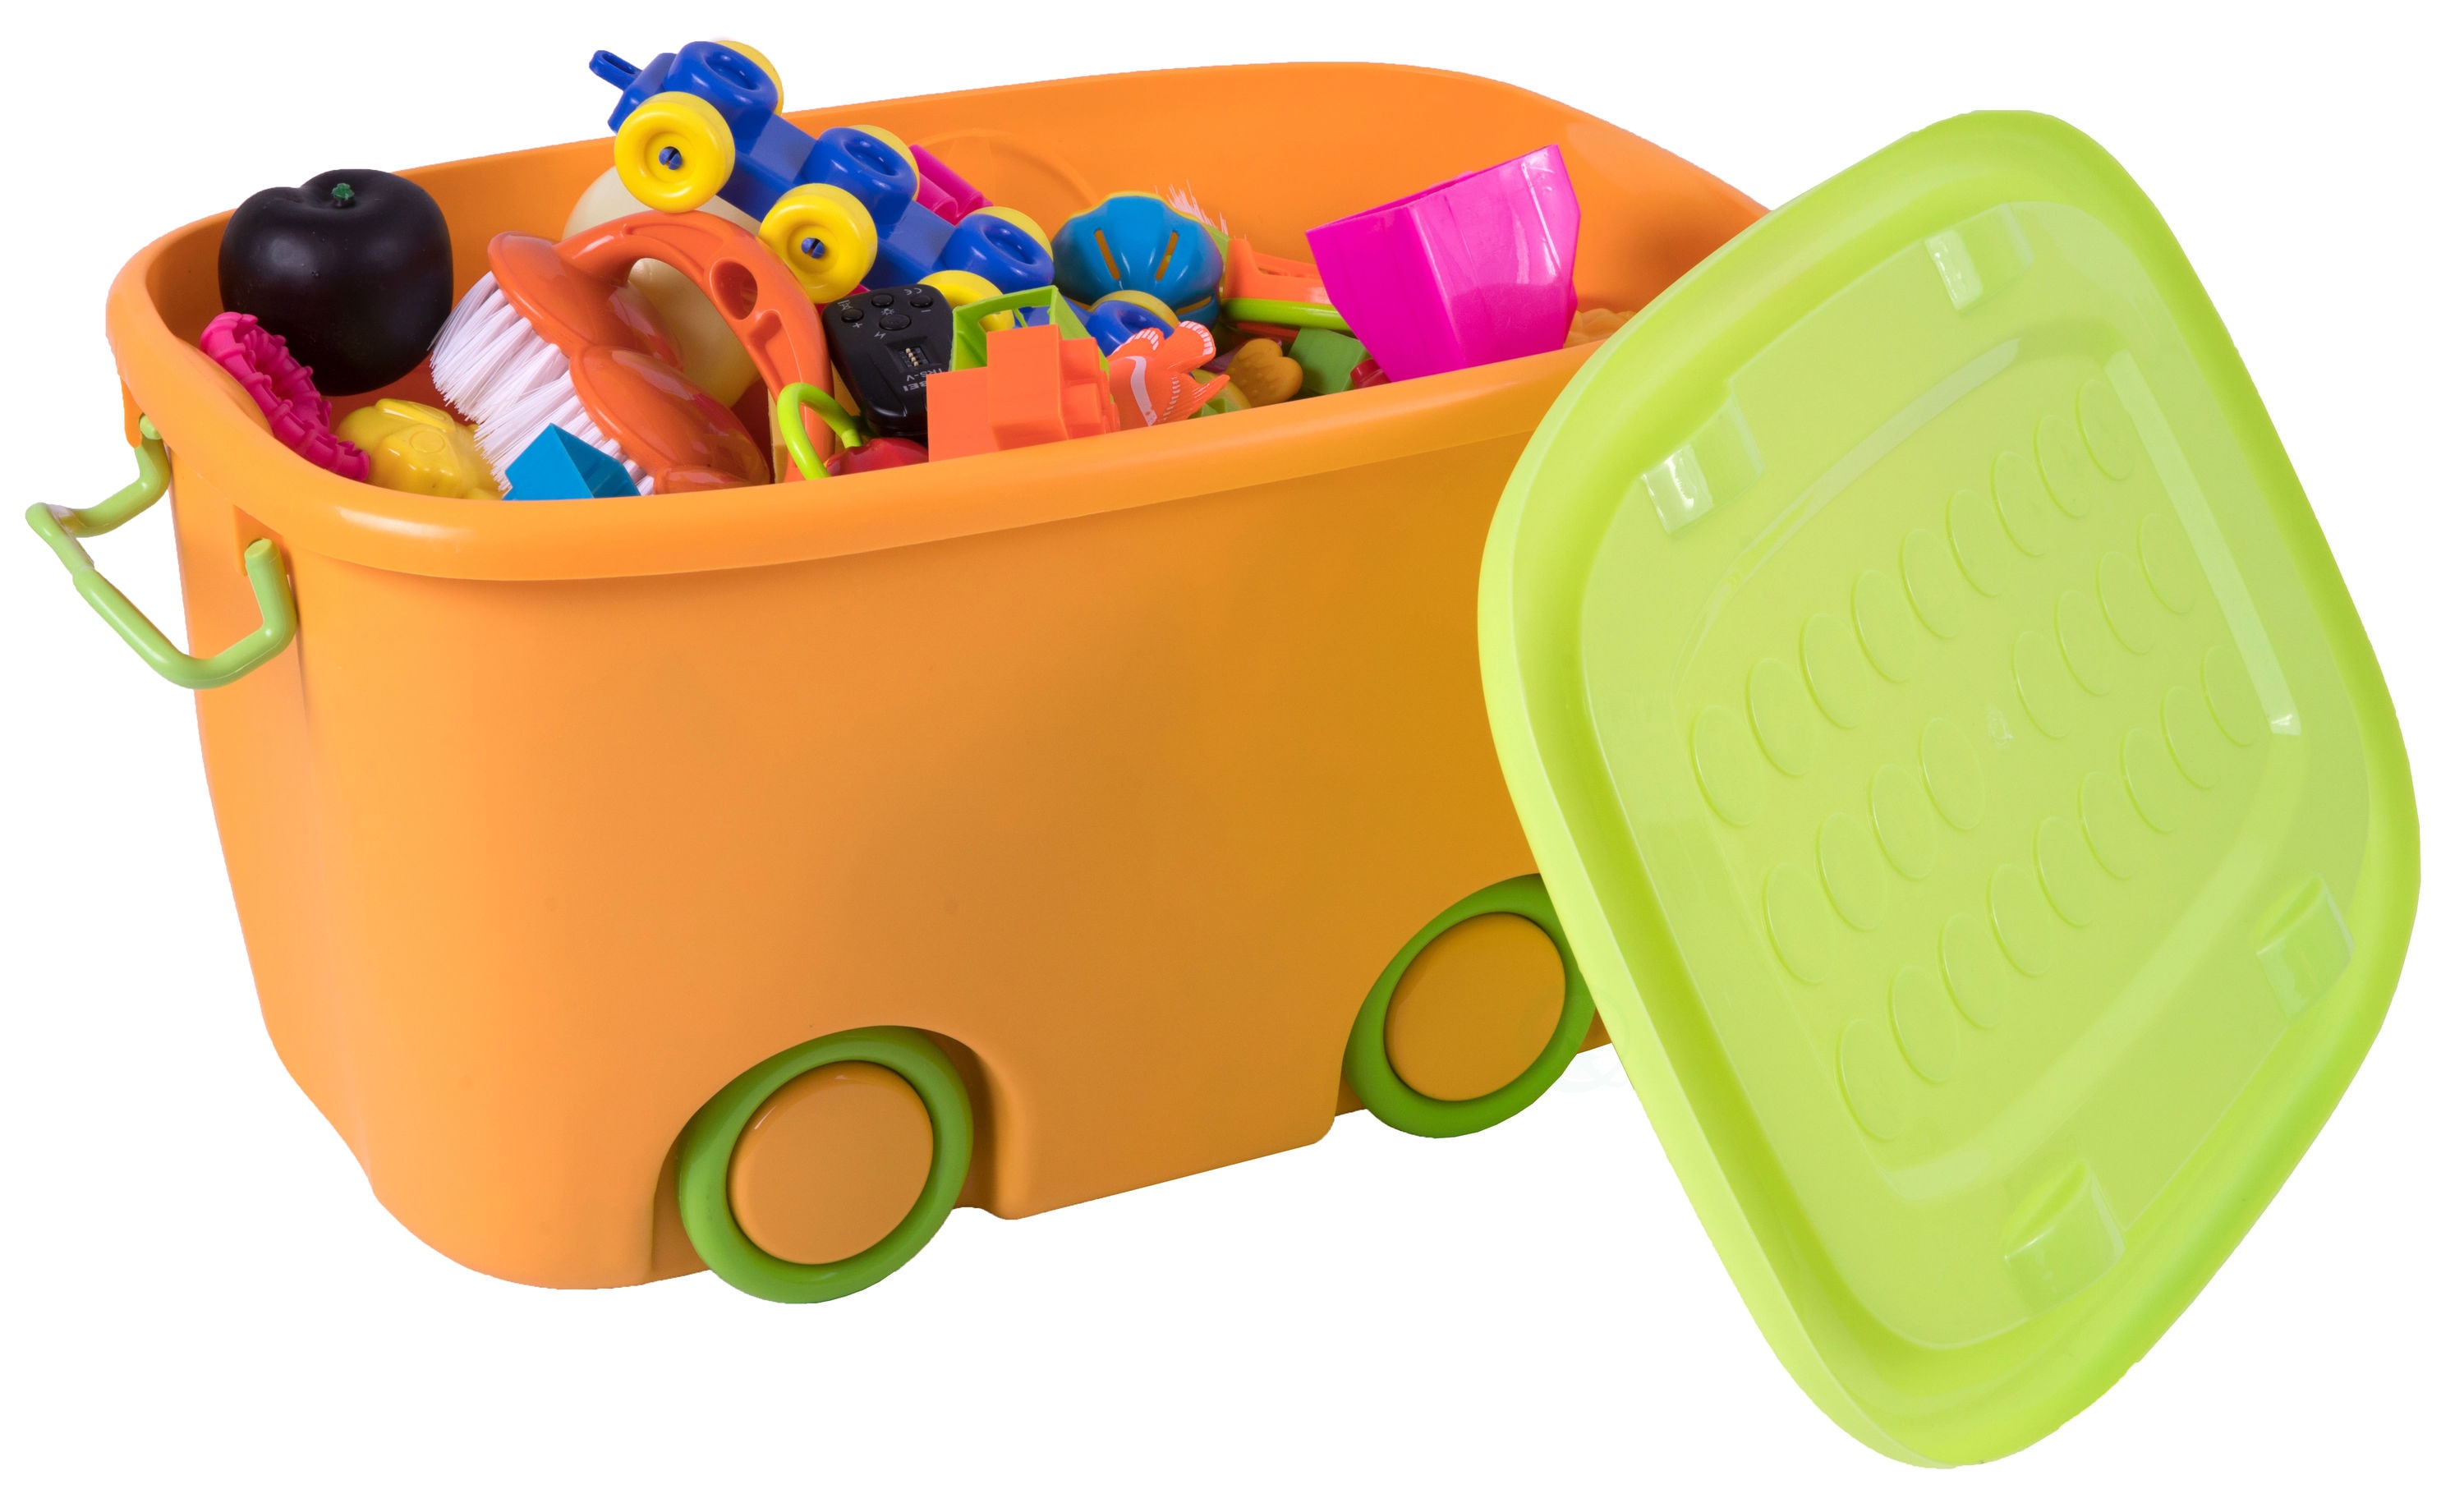 Orange Stackable Toy Storage Box